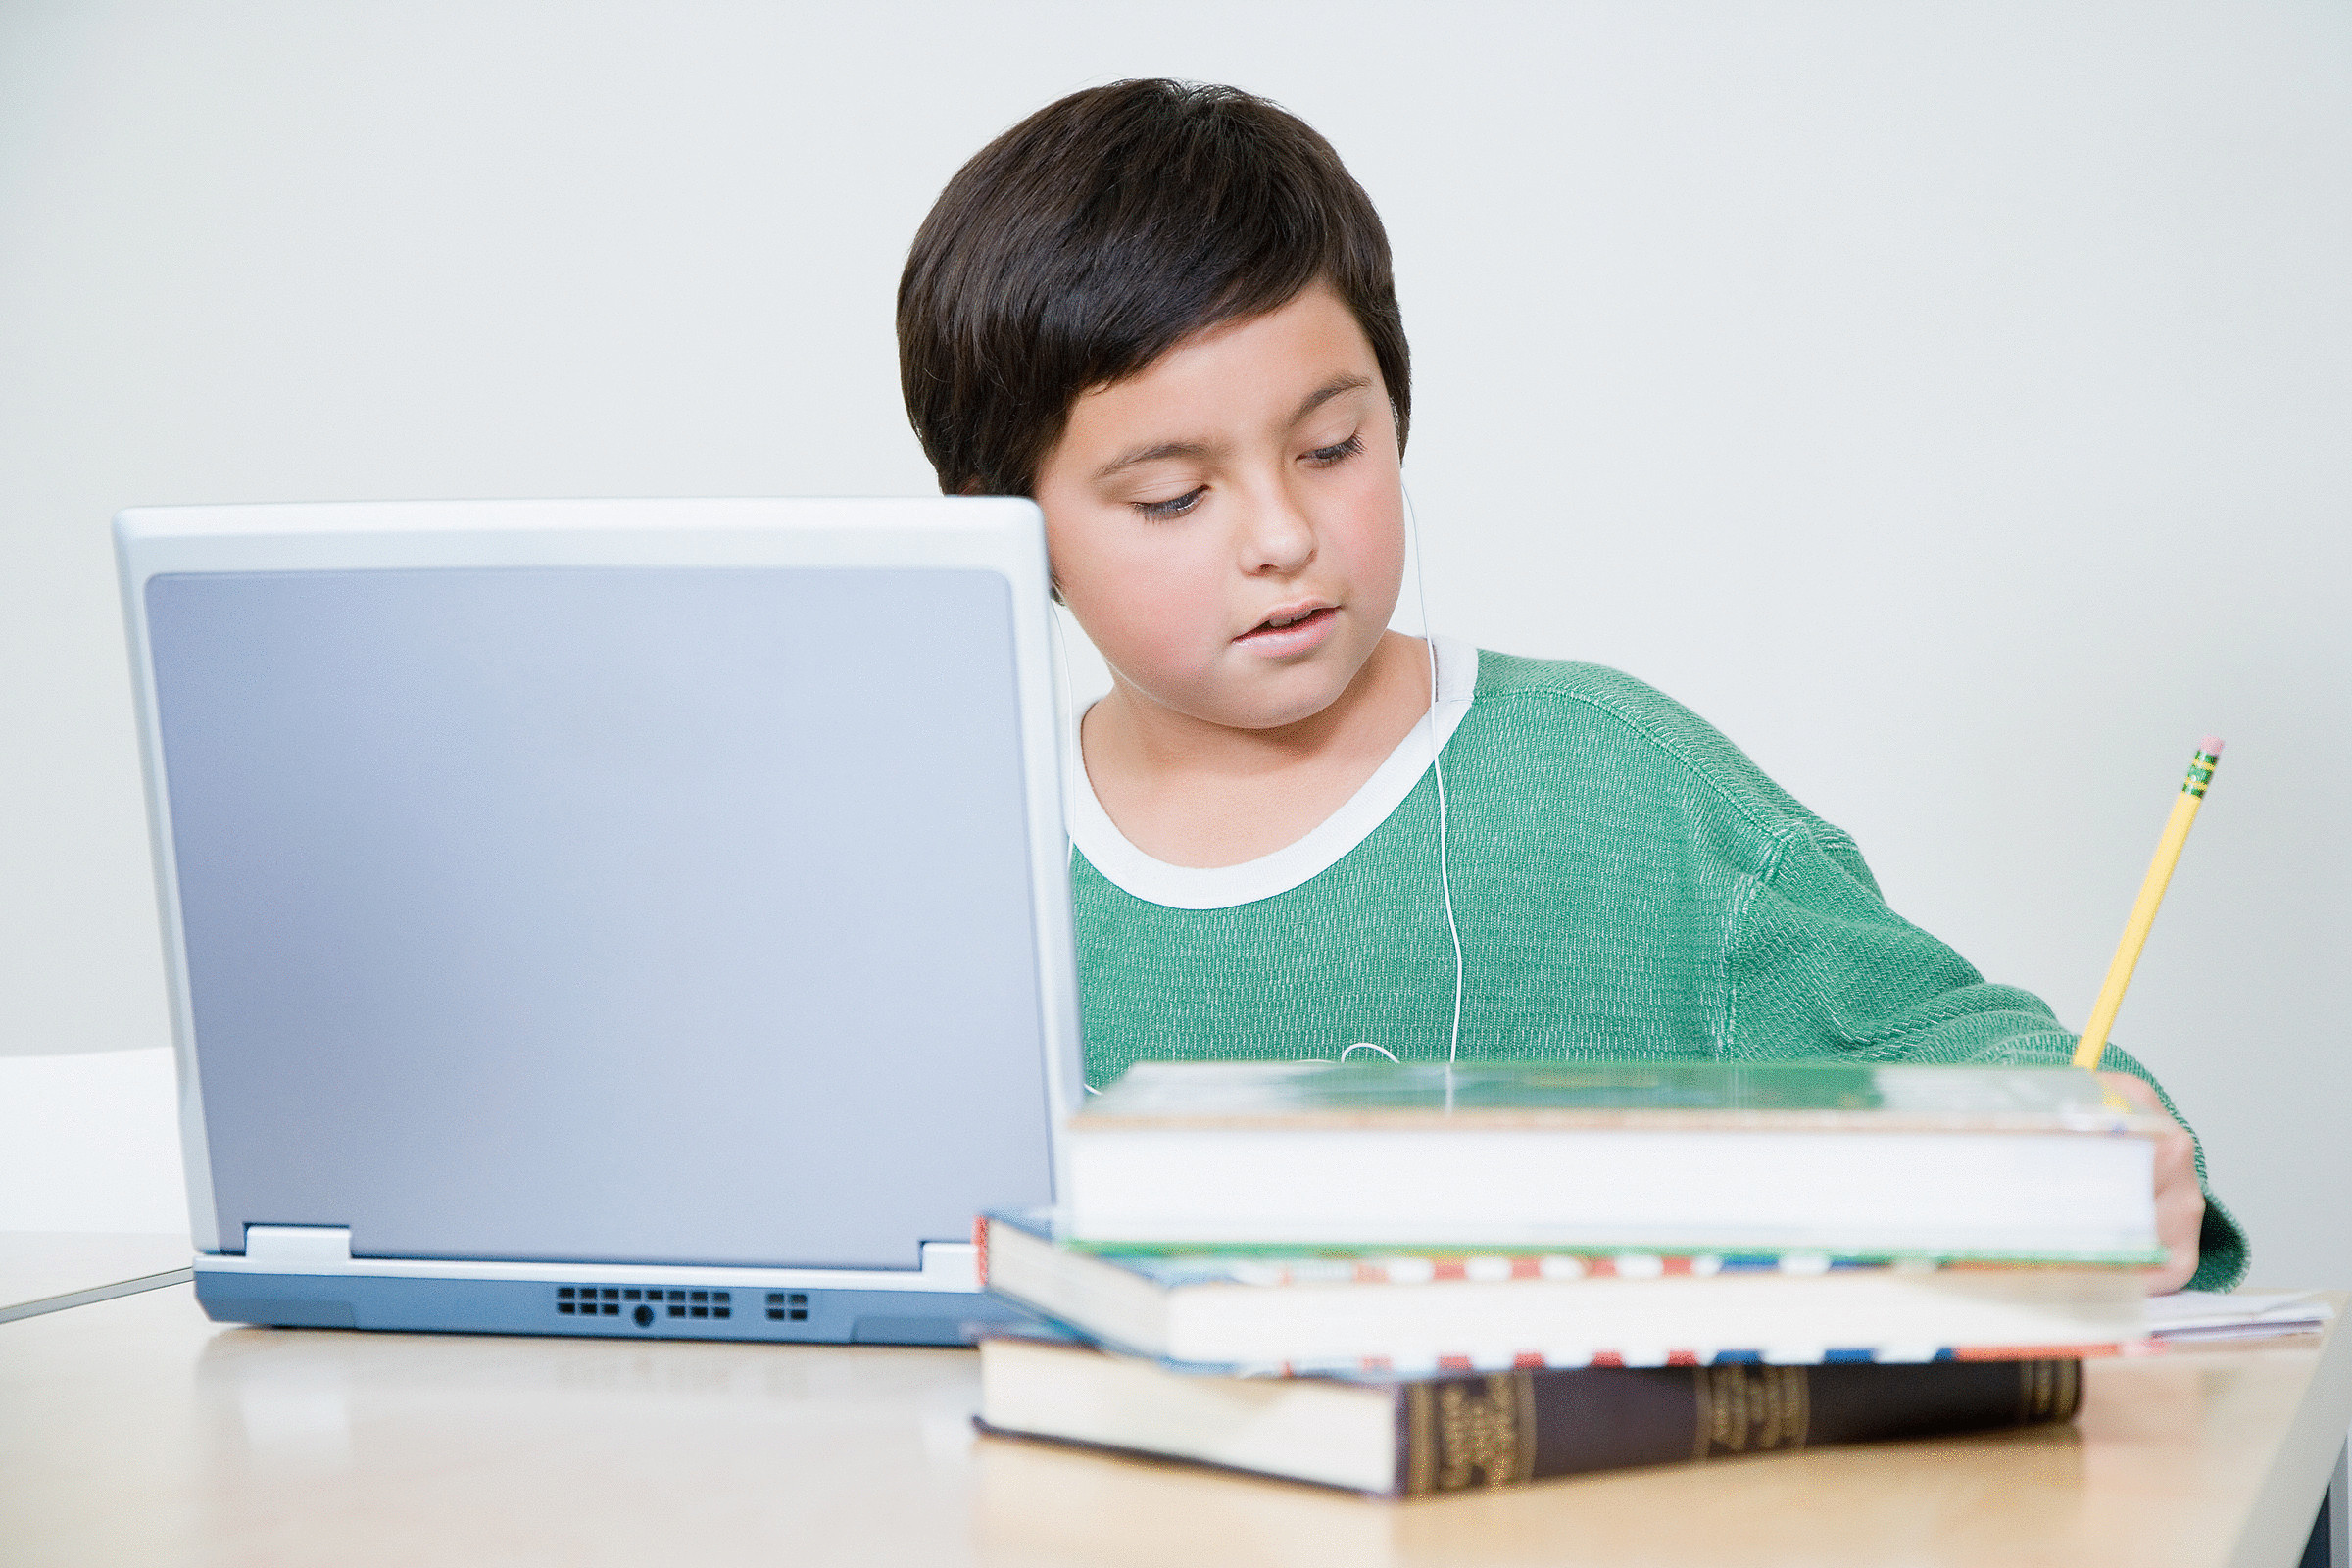 Интернет урок дети. Компьютер для школьника. Ребенок за компьютером. Мальчик с компьютером. Школьник с ноутбуком.